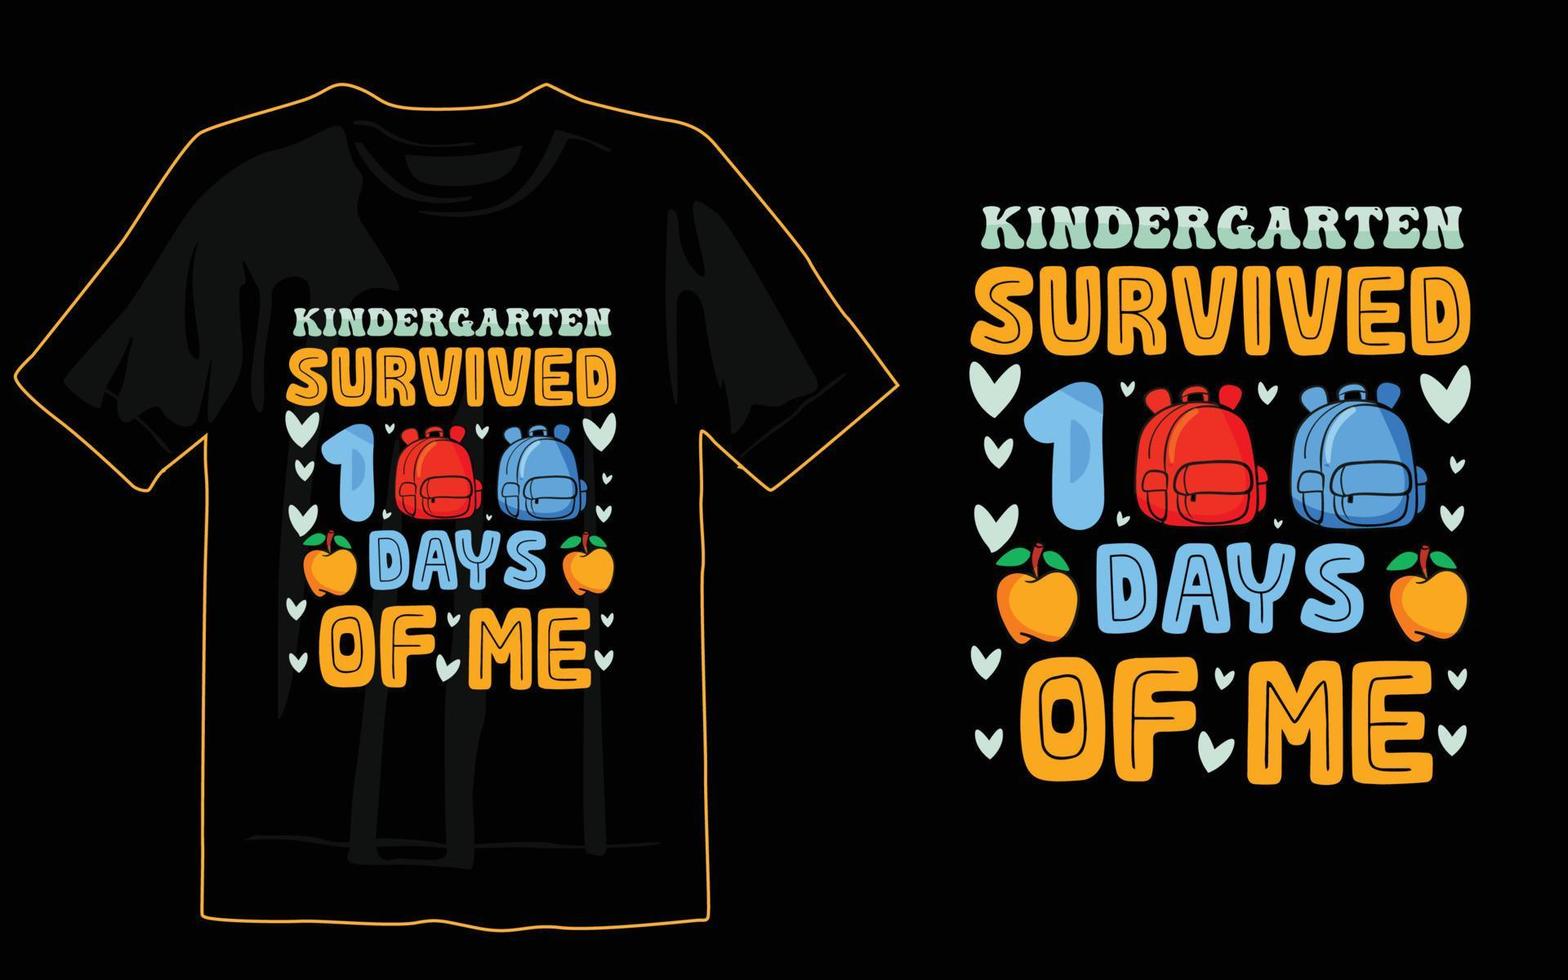 100 dias de impressão de design de camiseta escolar vetor